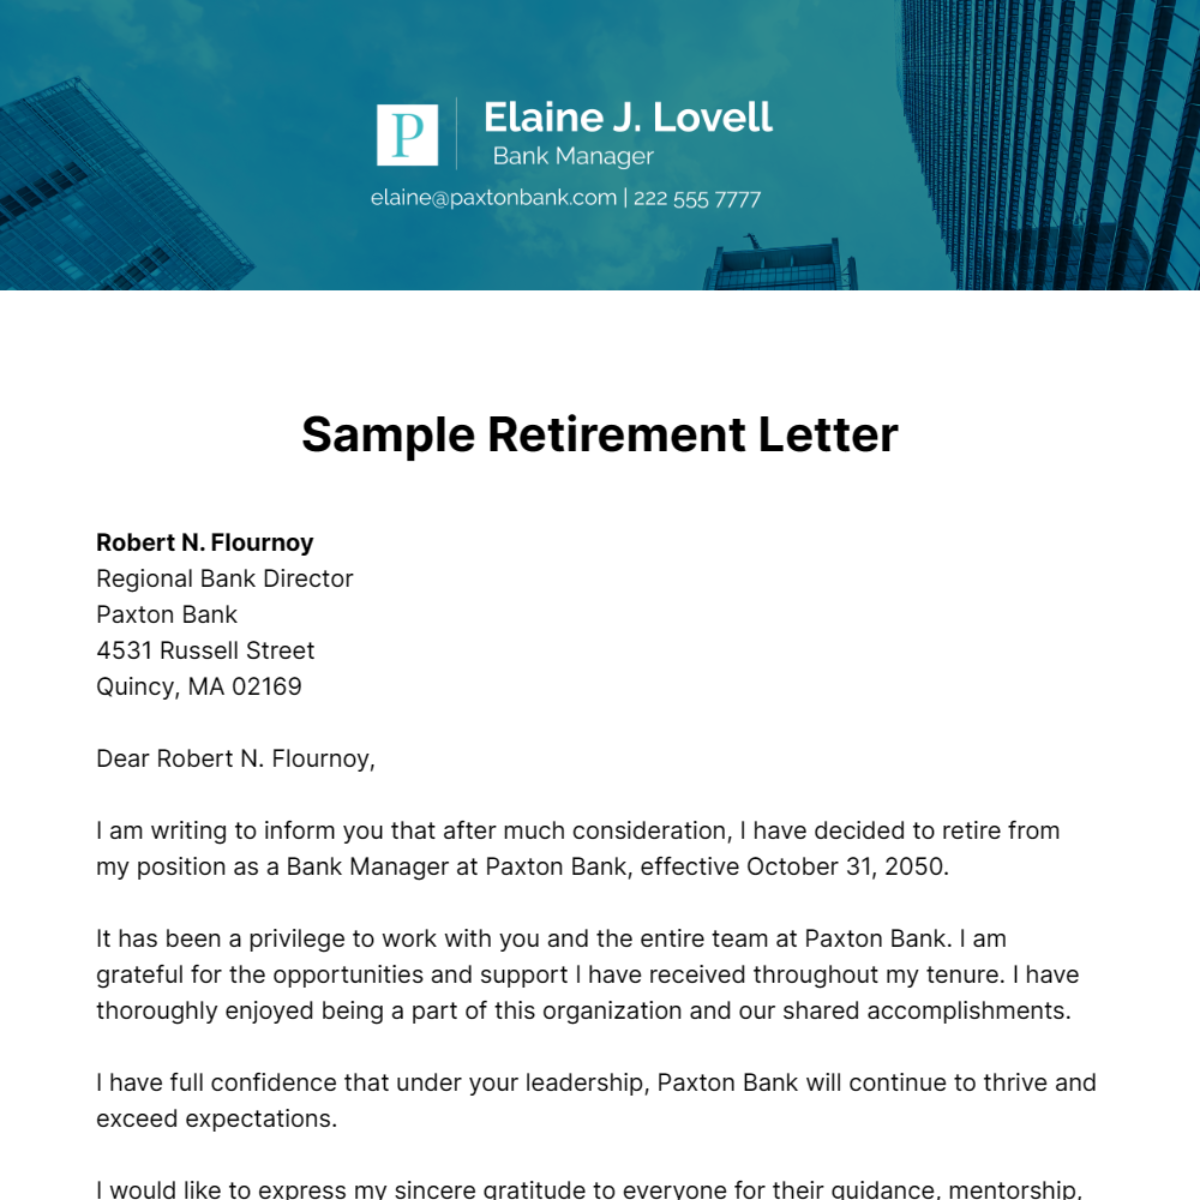 Sample Retirement Letter Template